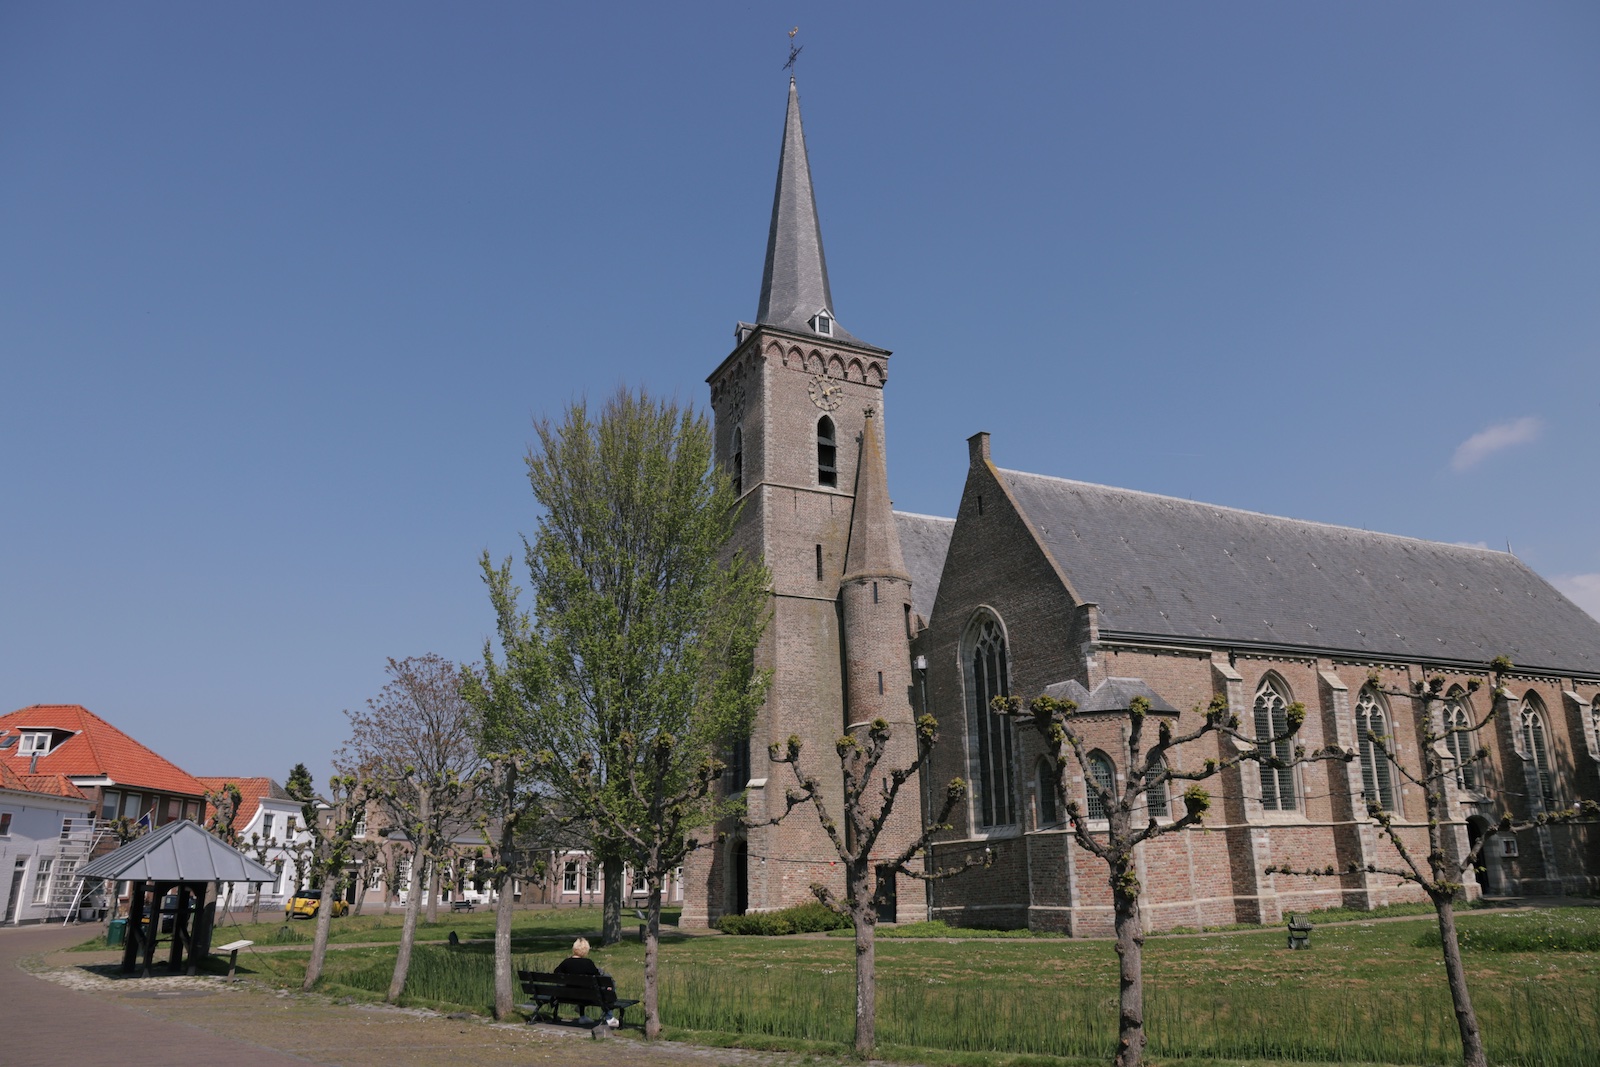 De kerk van het ringdorp Dreischor in Schouwen-Duiveland